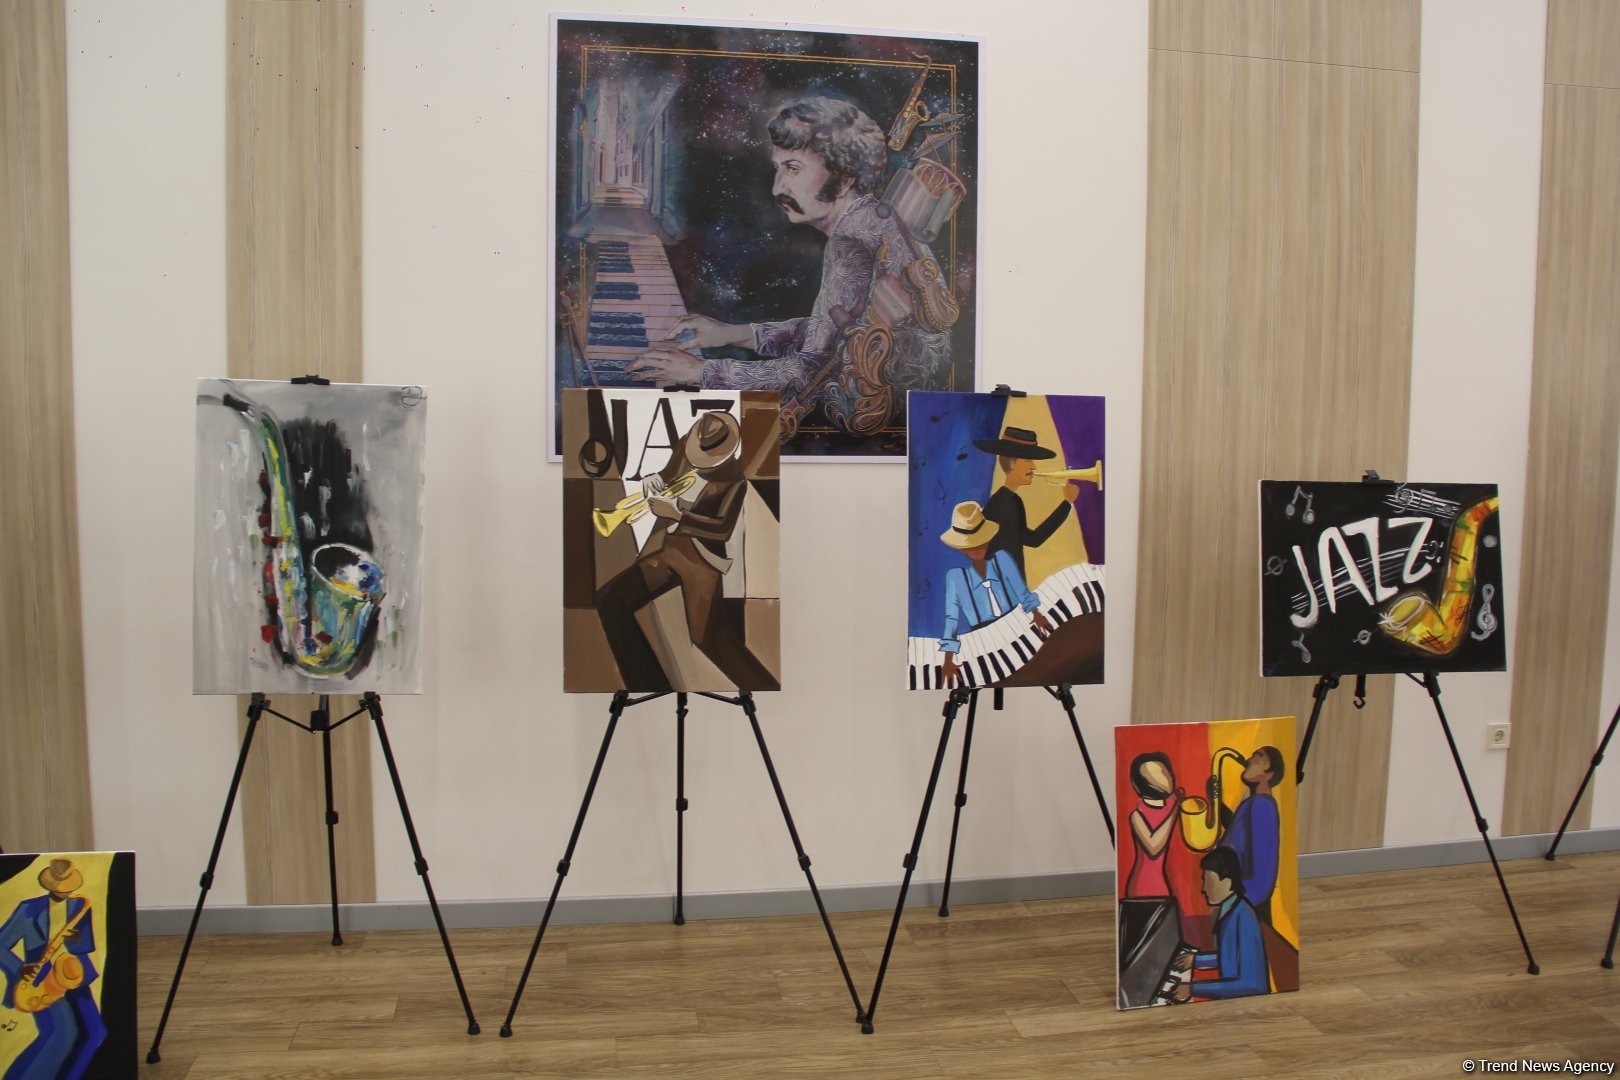 В школе искусств имени Вагифа Мустафазаде представлены выставка и концерт памяти Мастера (ВИДЕО, ФОТО)